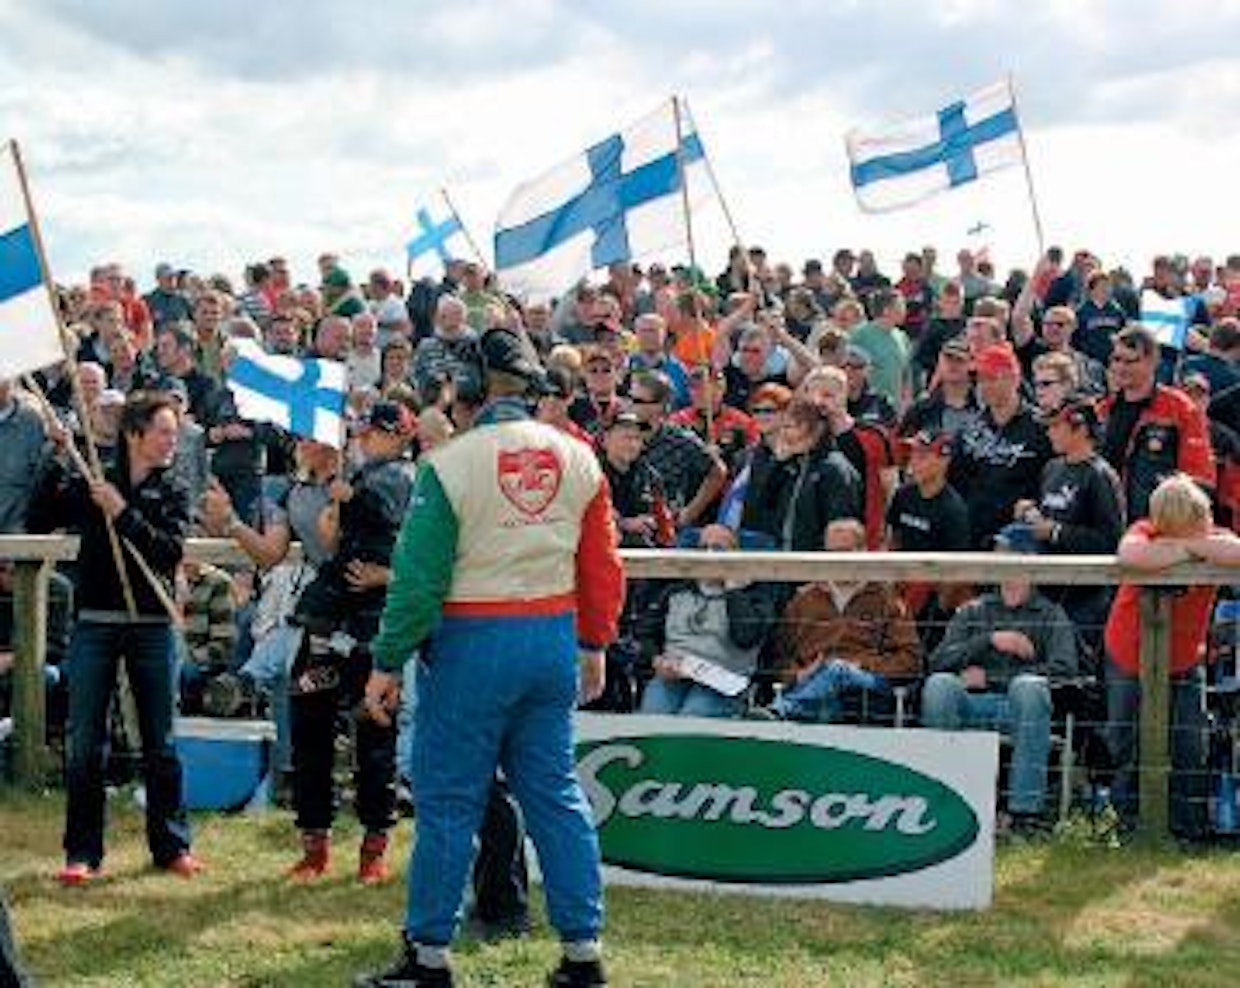 Tanskaan oli matkustanut paljon suomalaisia traktoriurheilun kannattajia.